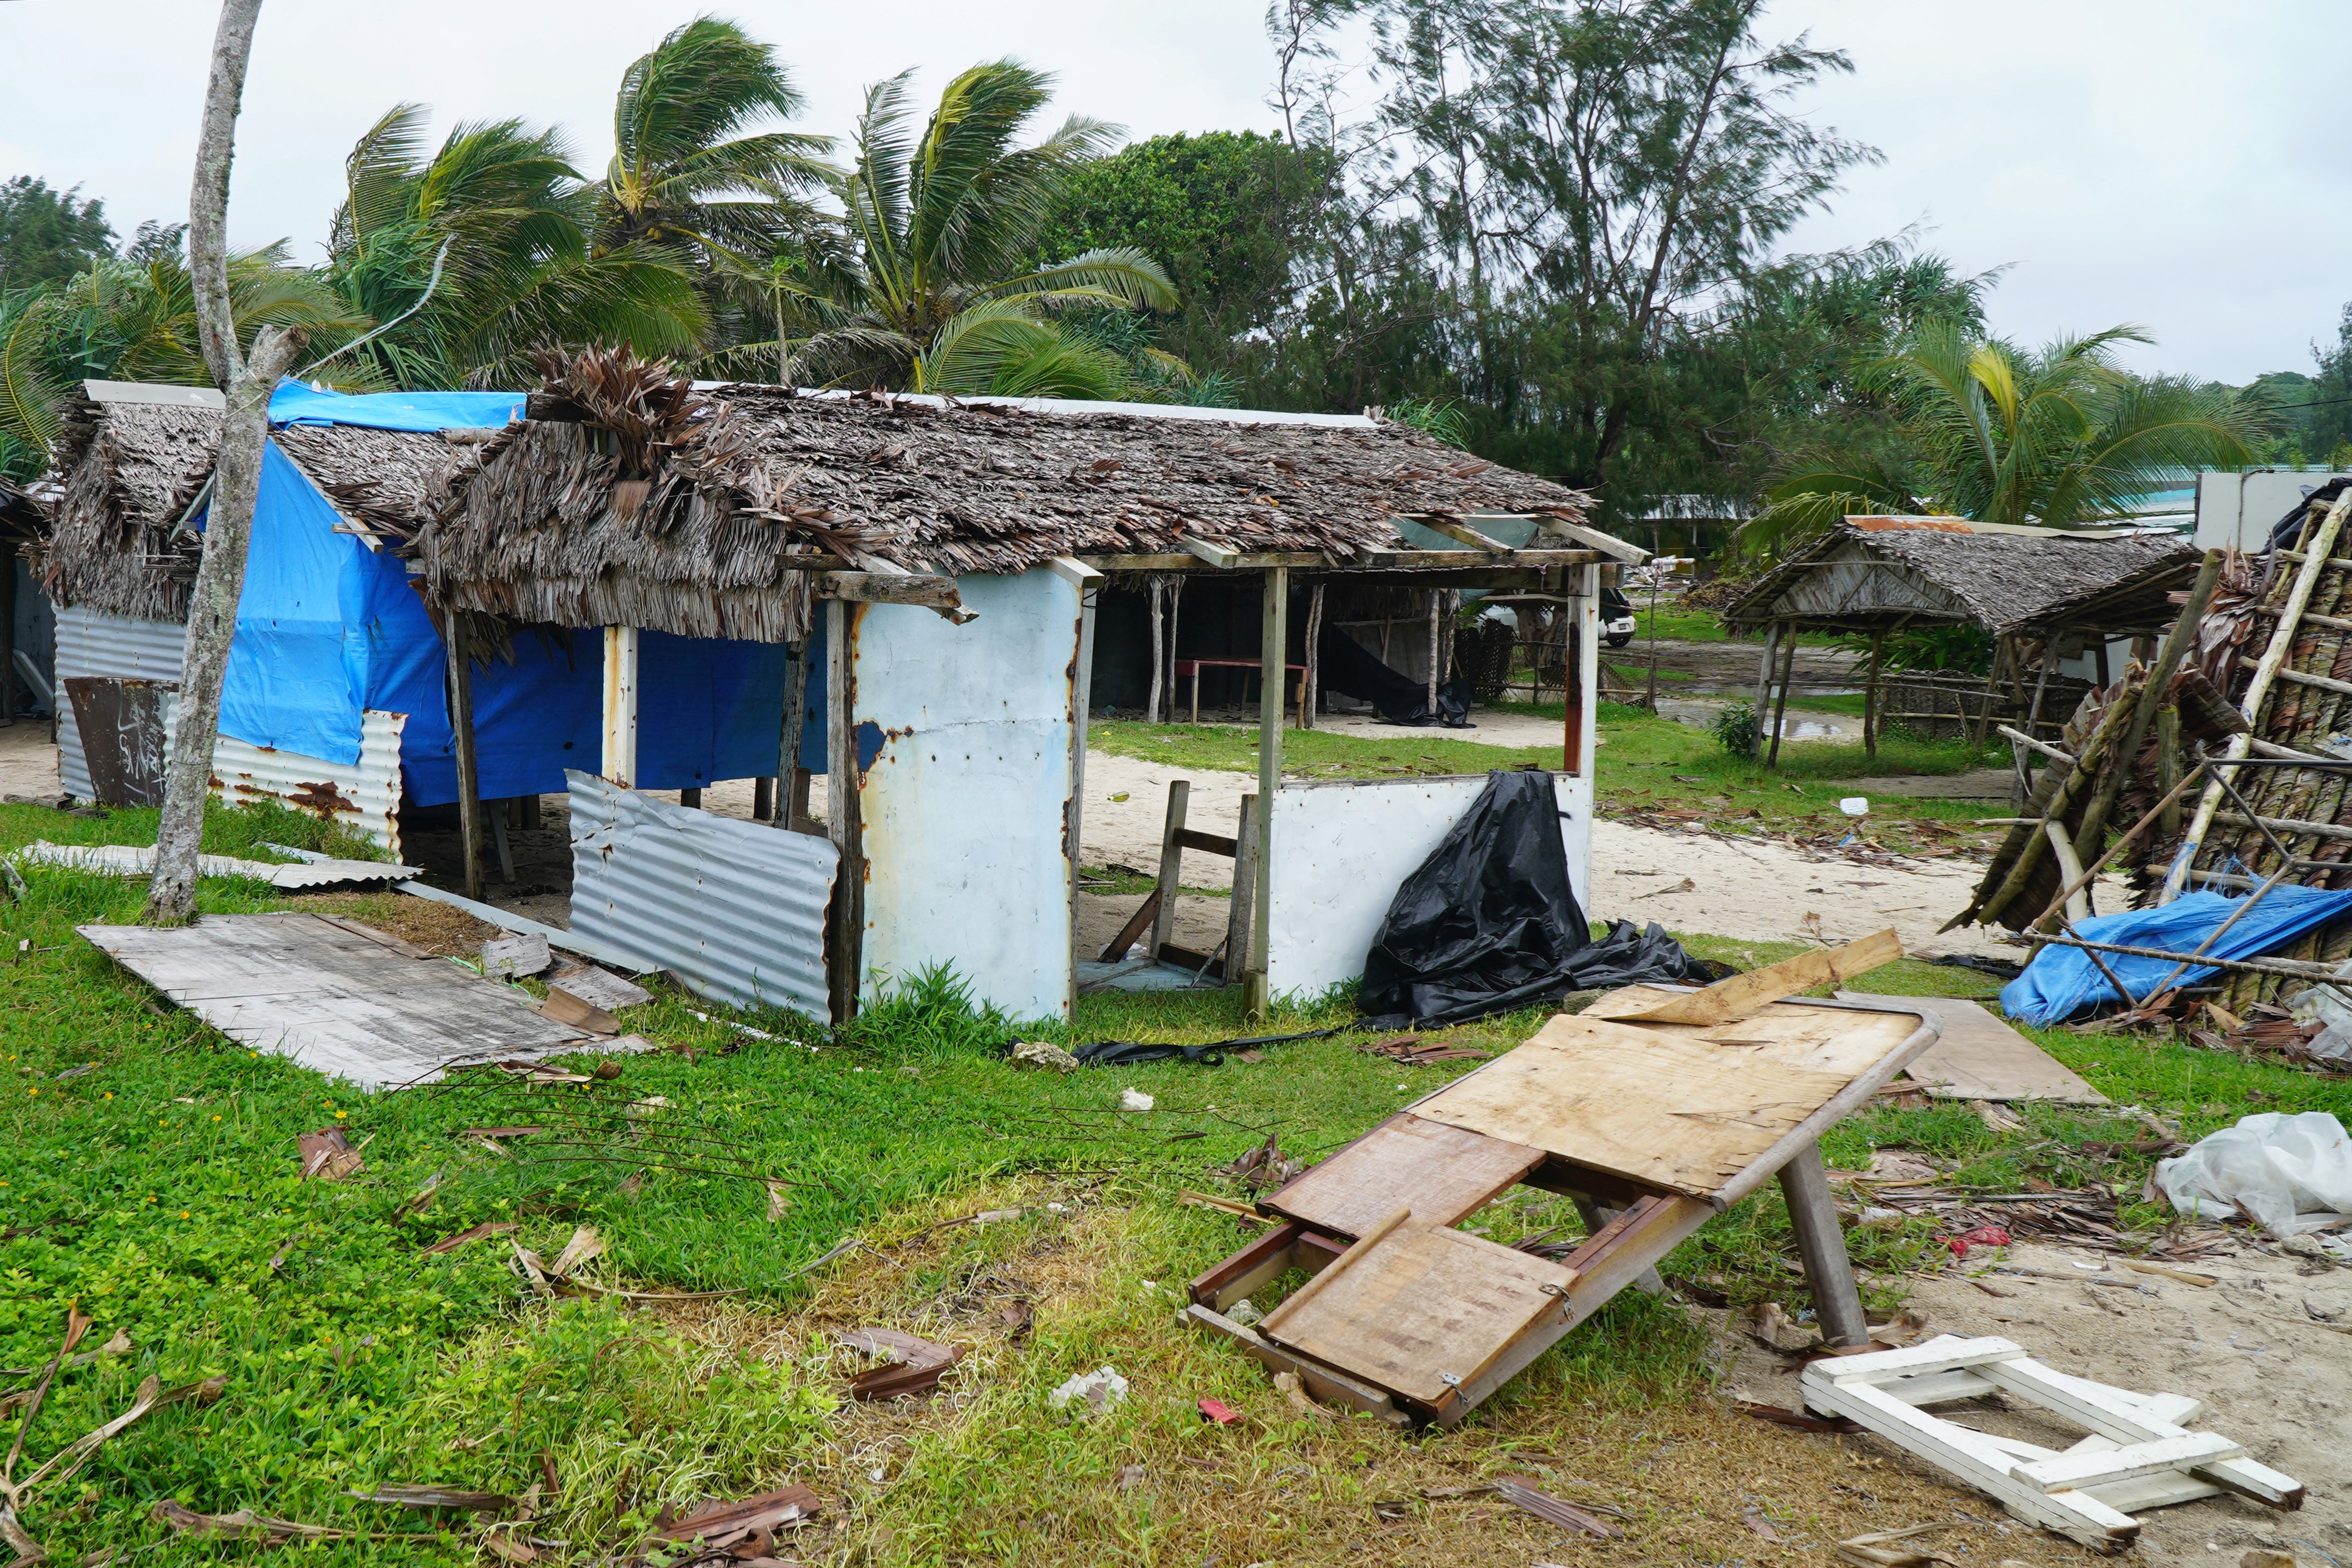 Arhipelagul Vanuatu a declarat stare de urgenţă climatică și alocă 1,2 miliarde de dolari pentru atenuarea efectelor